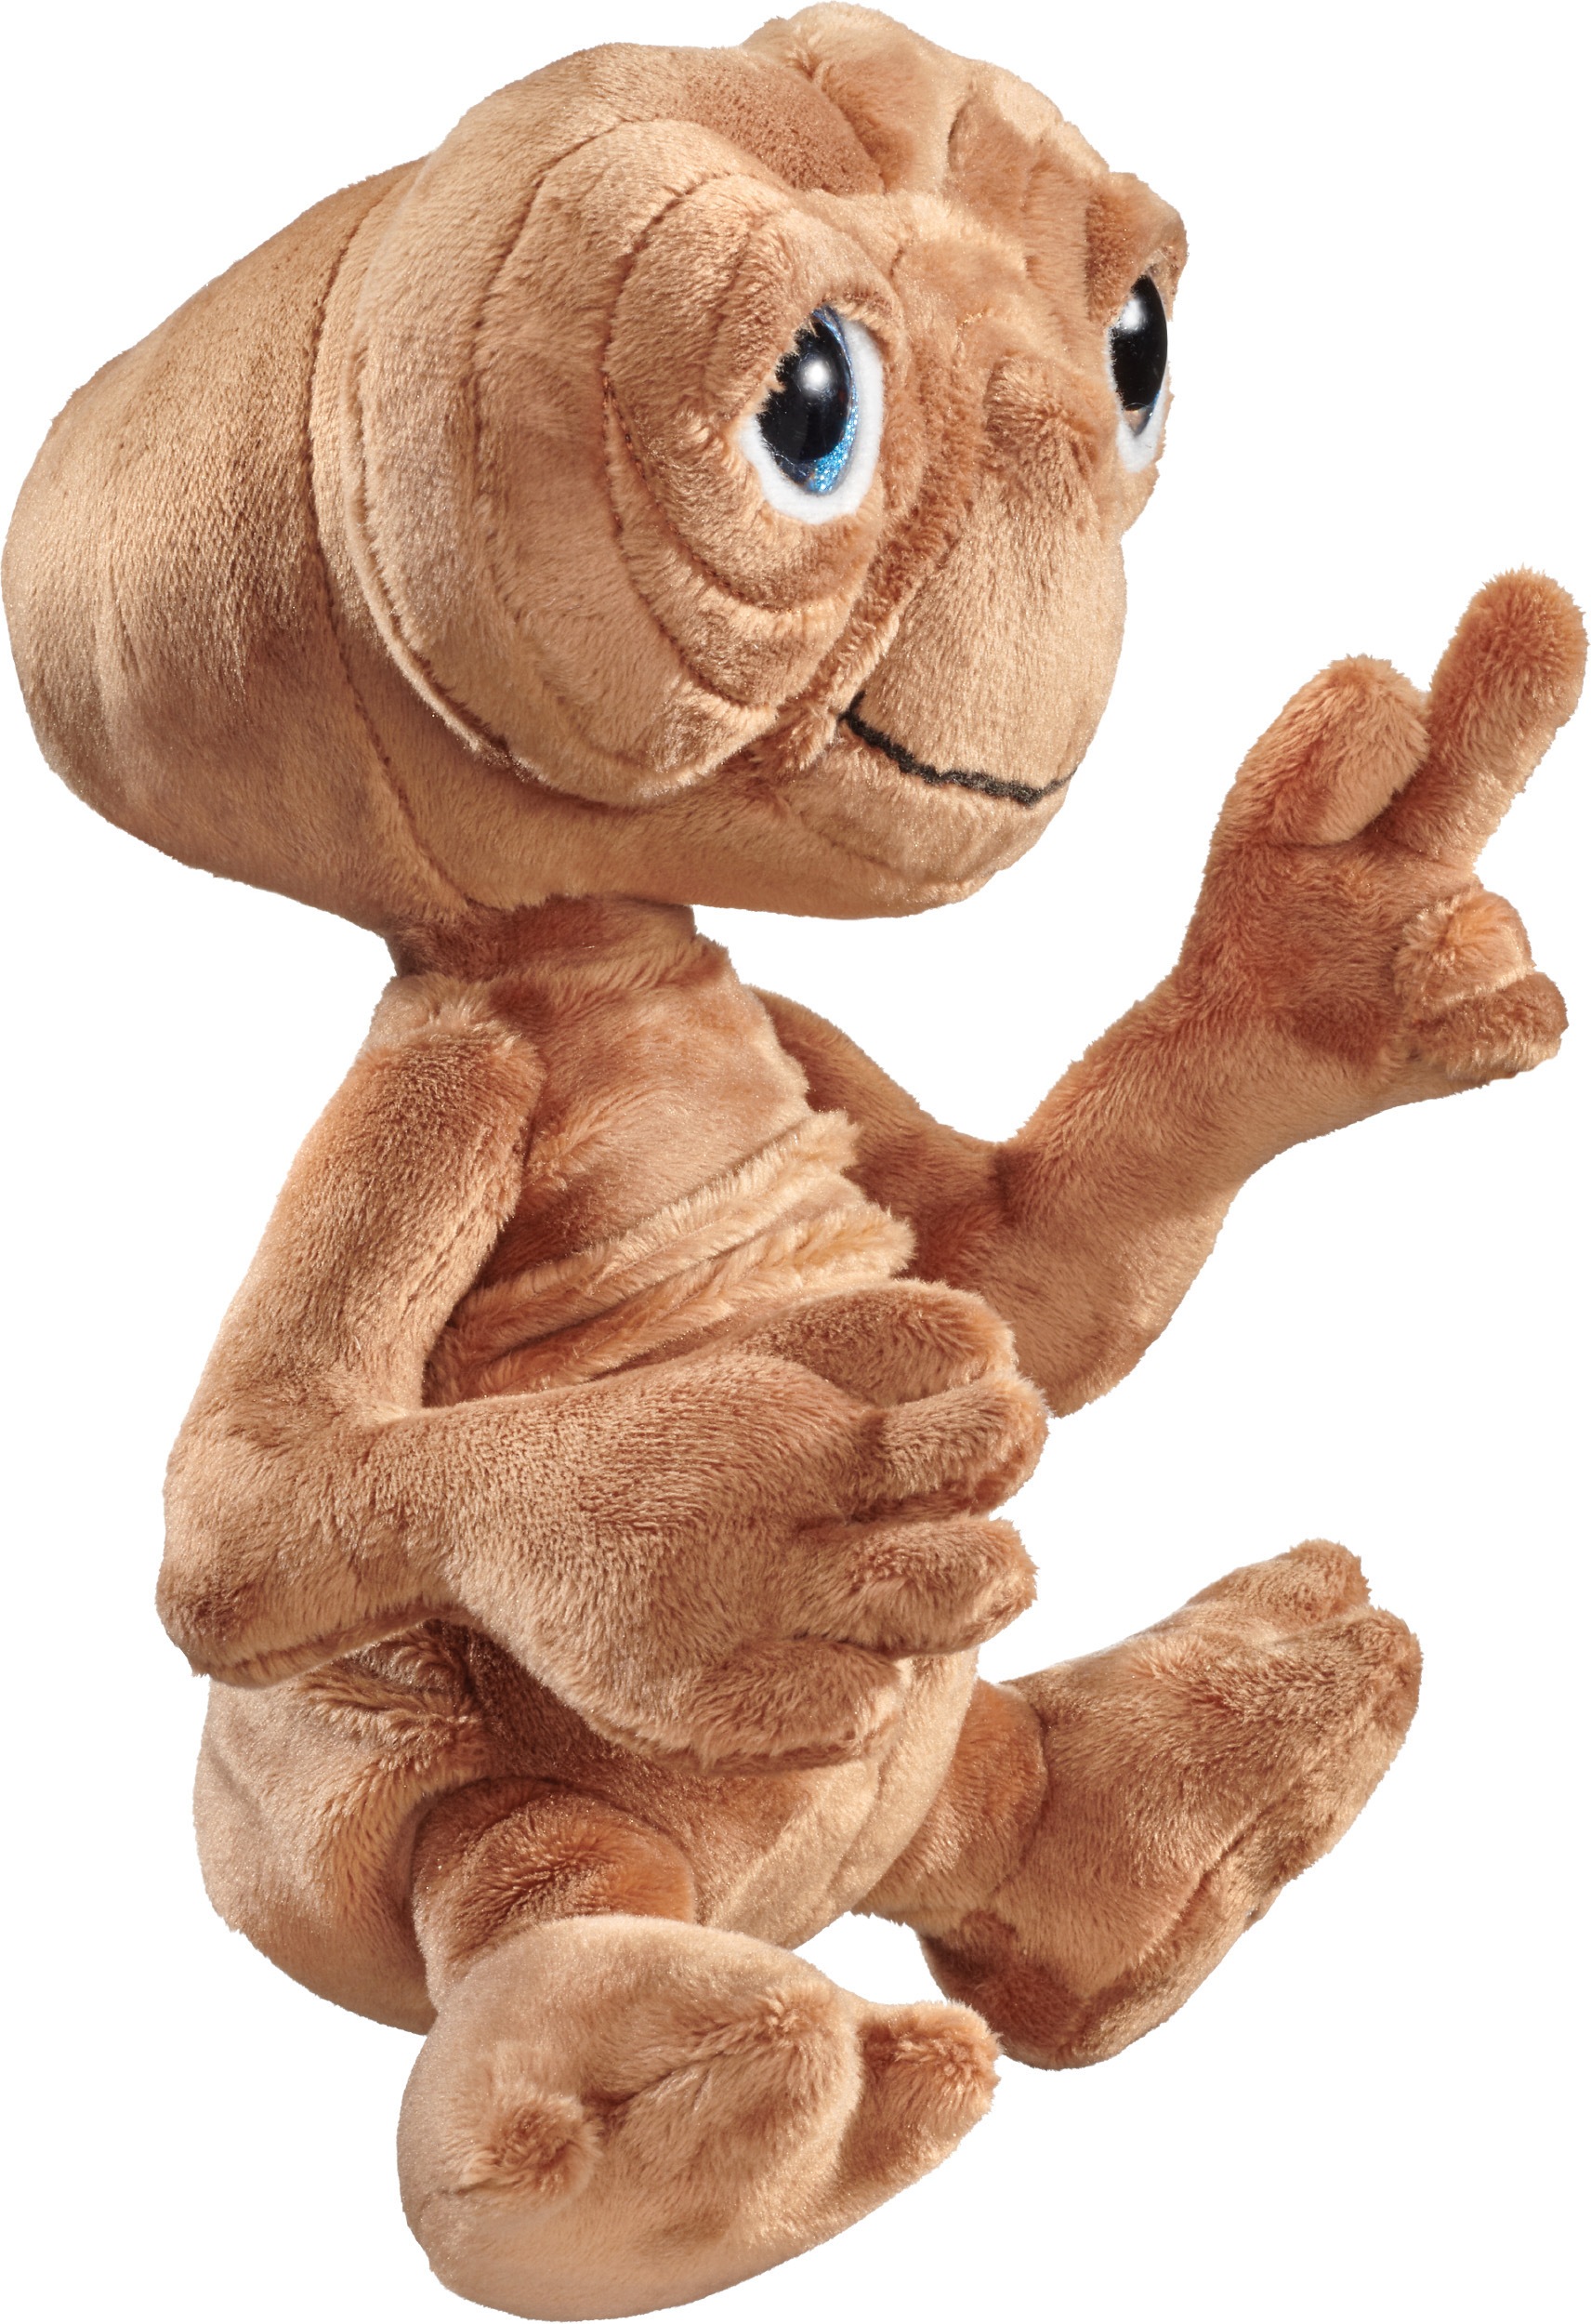 Schmidt Spiele Plüschfigur »Plüsch E.T. Der Außerirdische, 24 cm«, Sammlerfigur in hochwertiger Verarbeitung zum Jubiläum - 40 Jahre E.T.